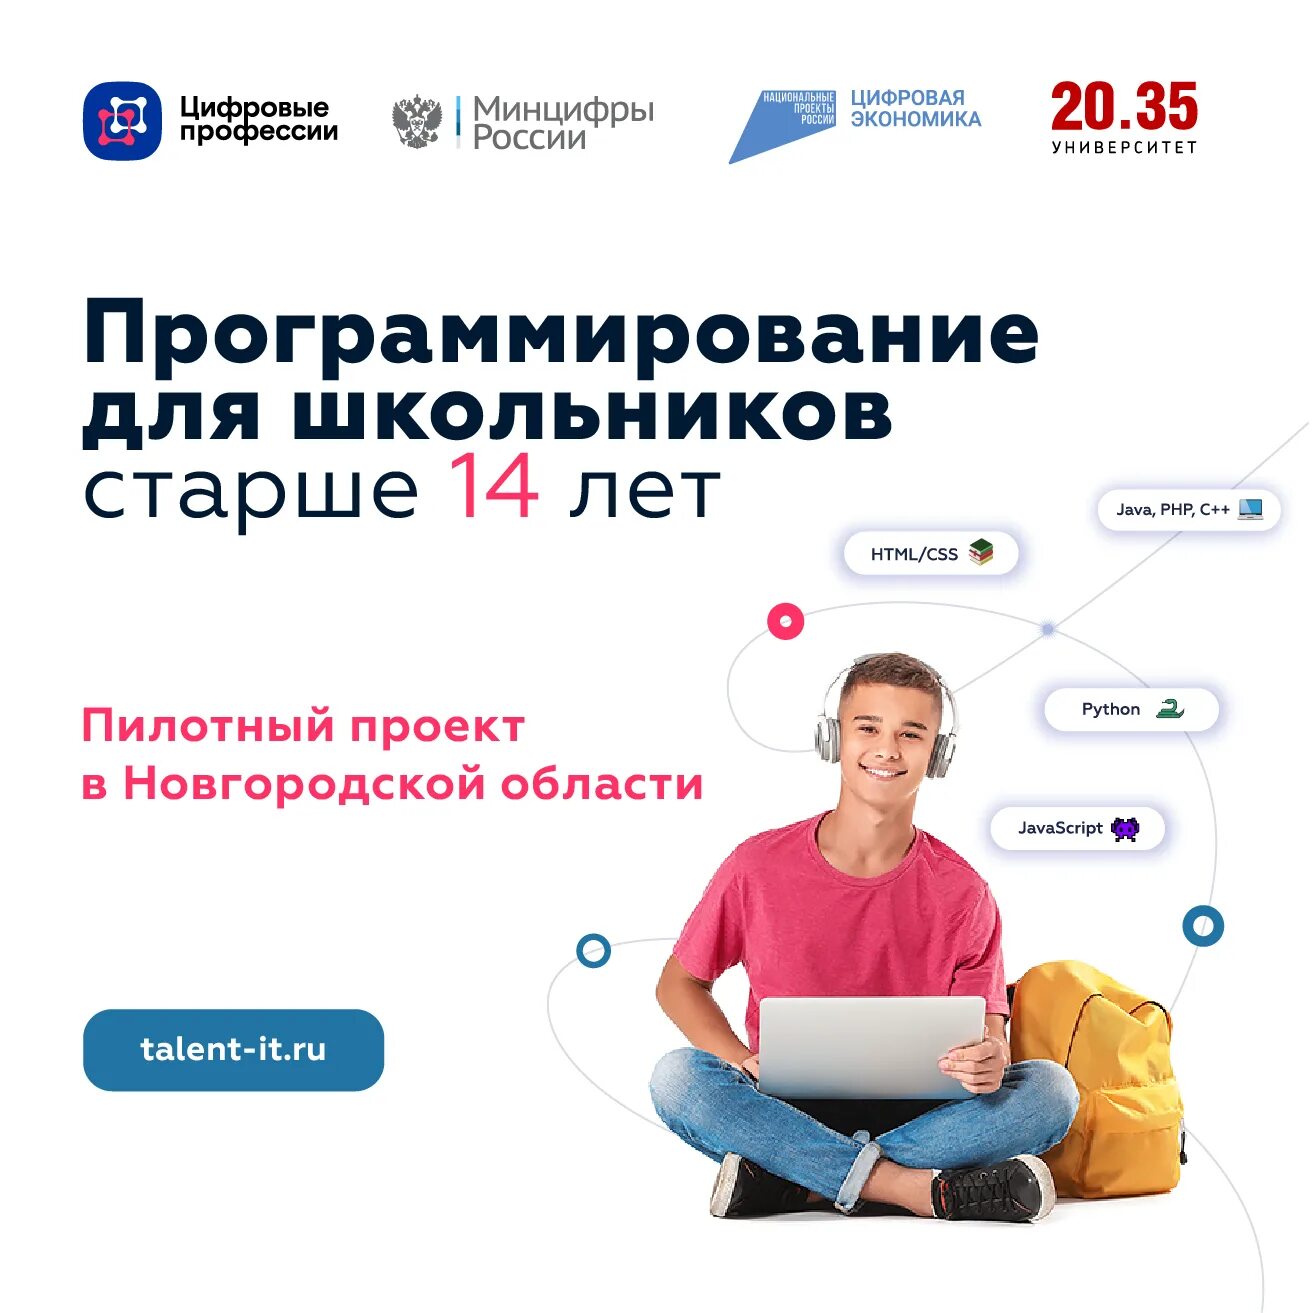 Бесплатный курс программирования dpo edu sigma ru. Программирование для школьников. Бесплатные курсы по программированию для школьников. Проект по программированию. Курсы по программированию для школьников.